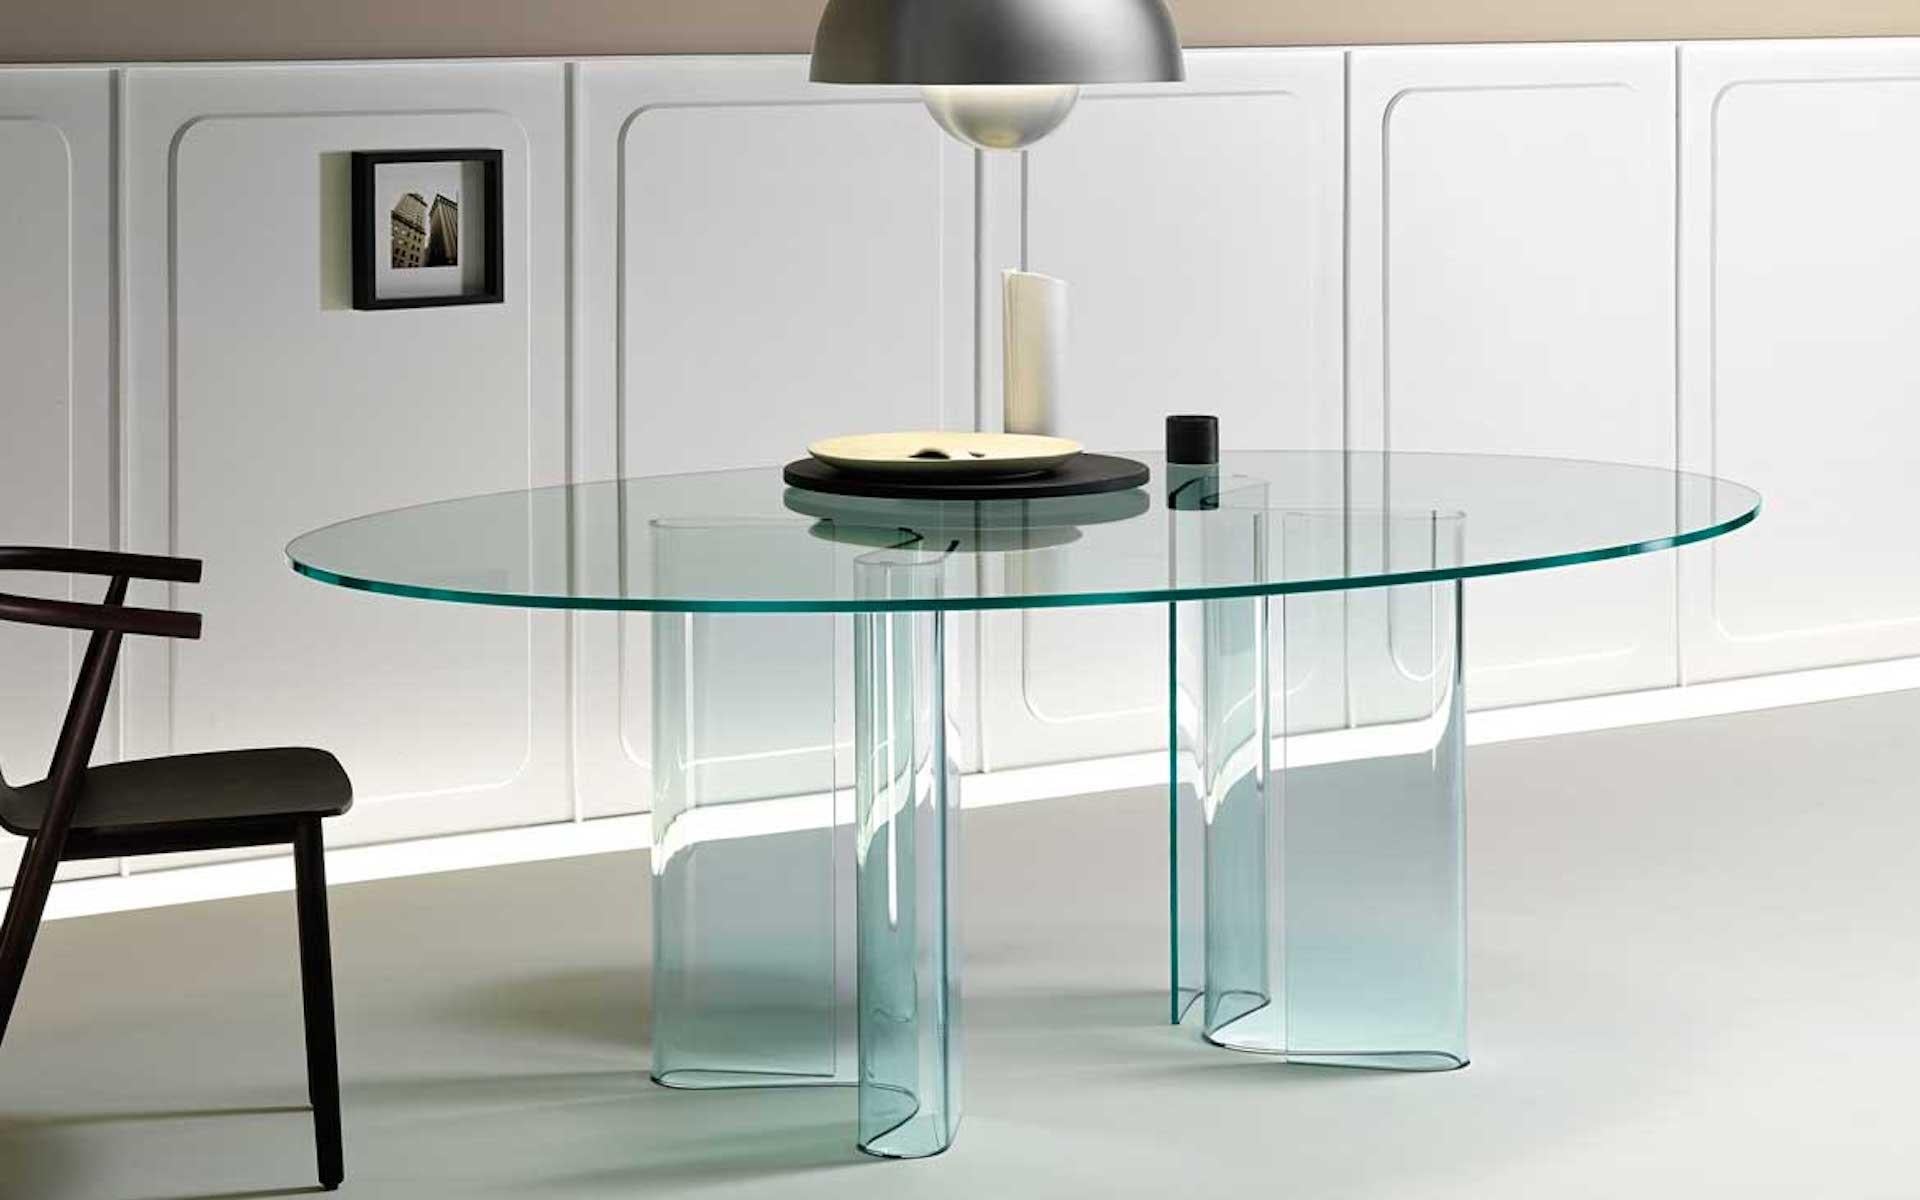 Table avec base en verre incurvé de 12 mm d'épaisseur (côtés 45 cm) et plateau en verre trempé de 15 mm d'épaisseur.
       